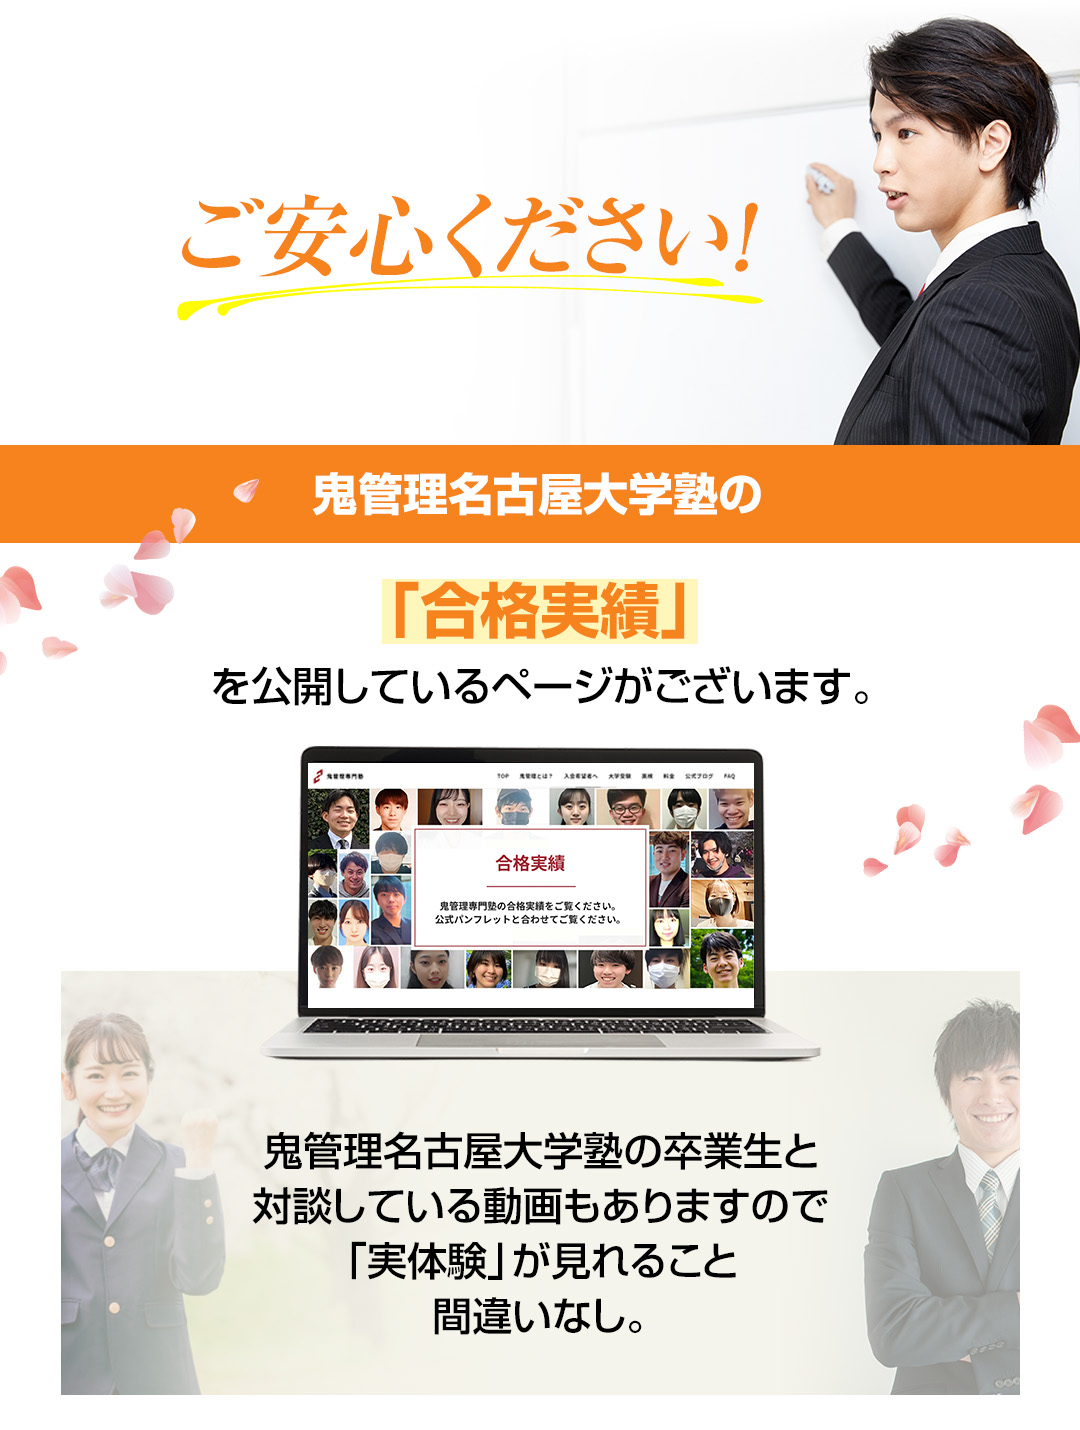 鬼管理名古屋大学塾の「合格実績」を公開しているページがございます